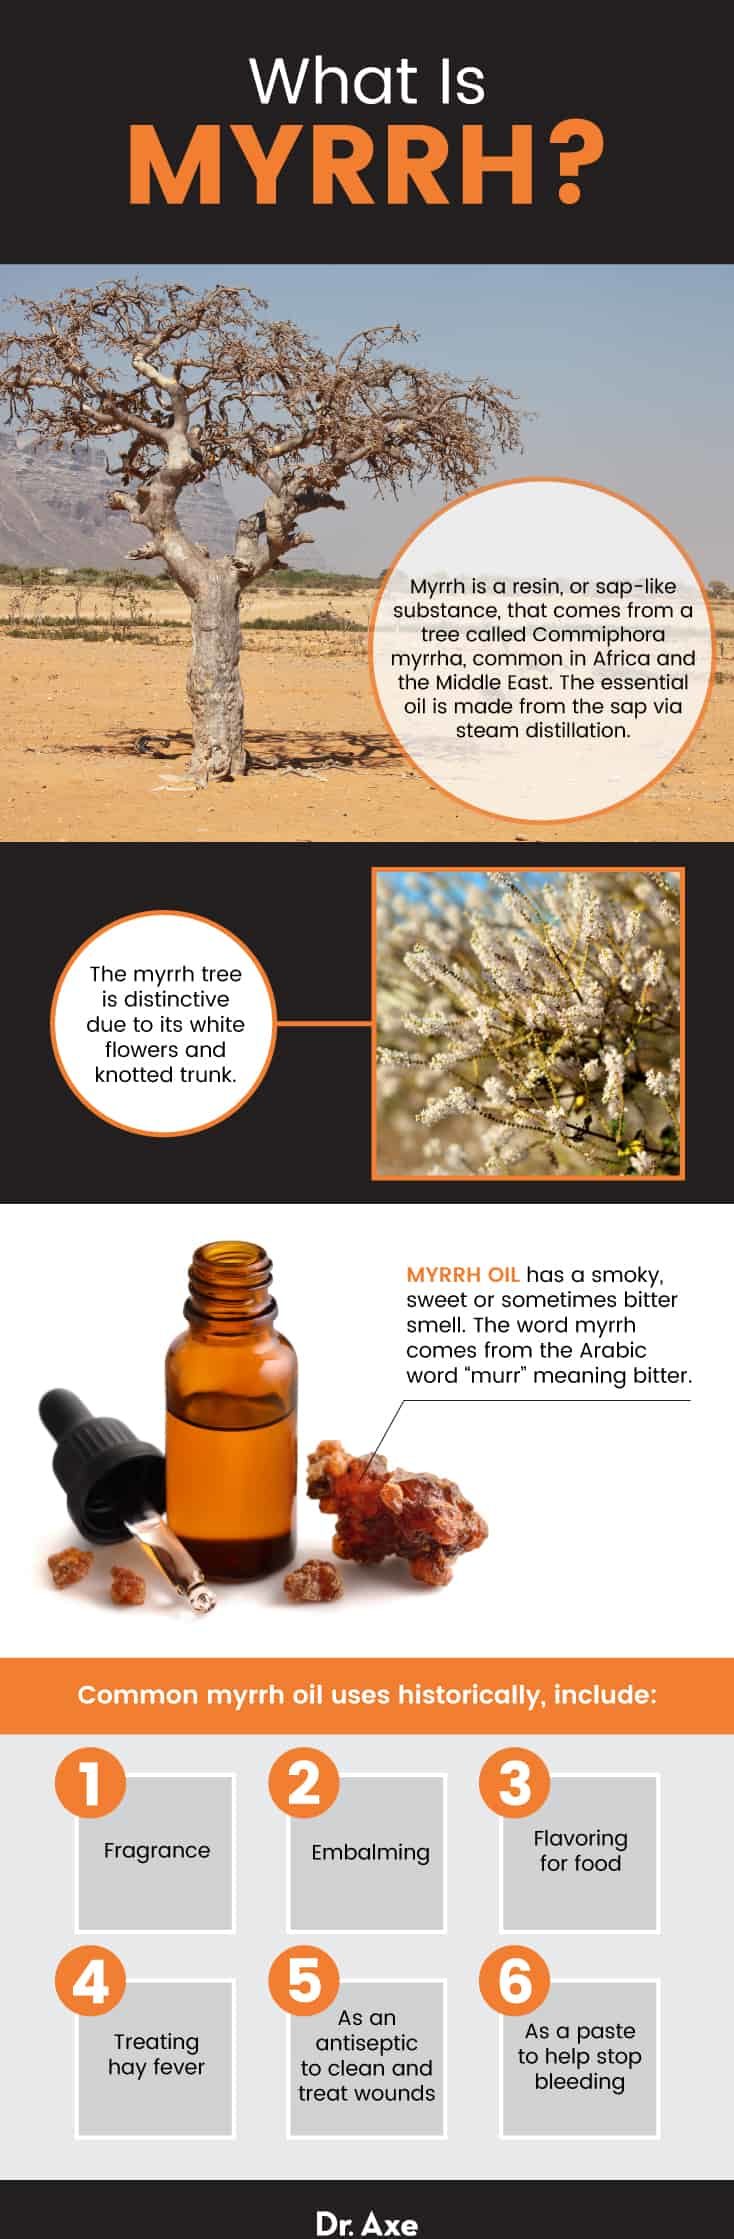 Myrrh oil: What is myrrh? - Dr. Axe